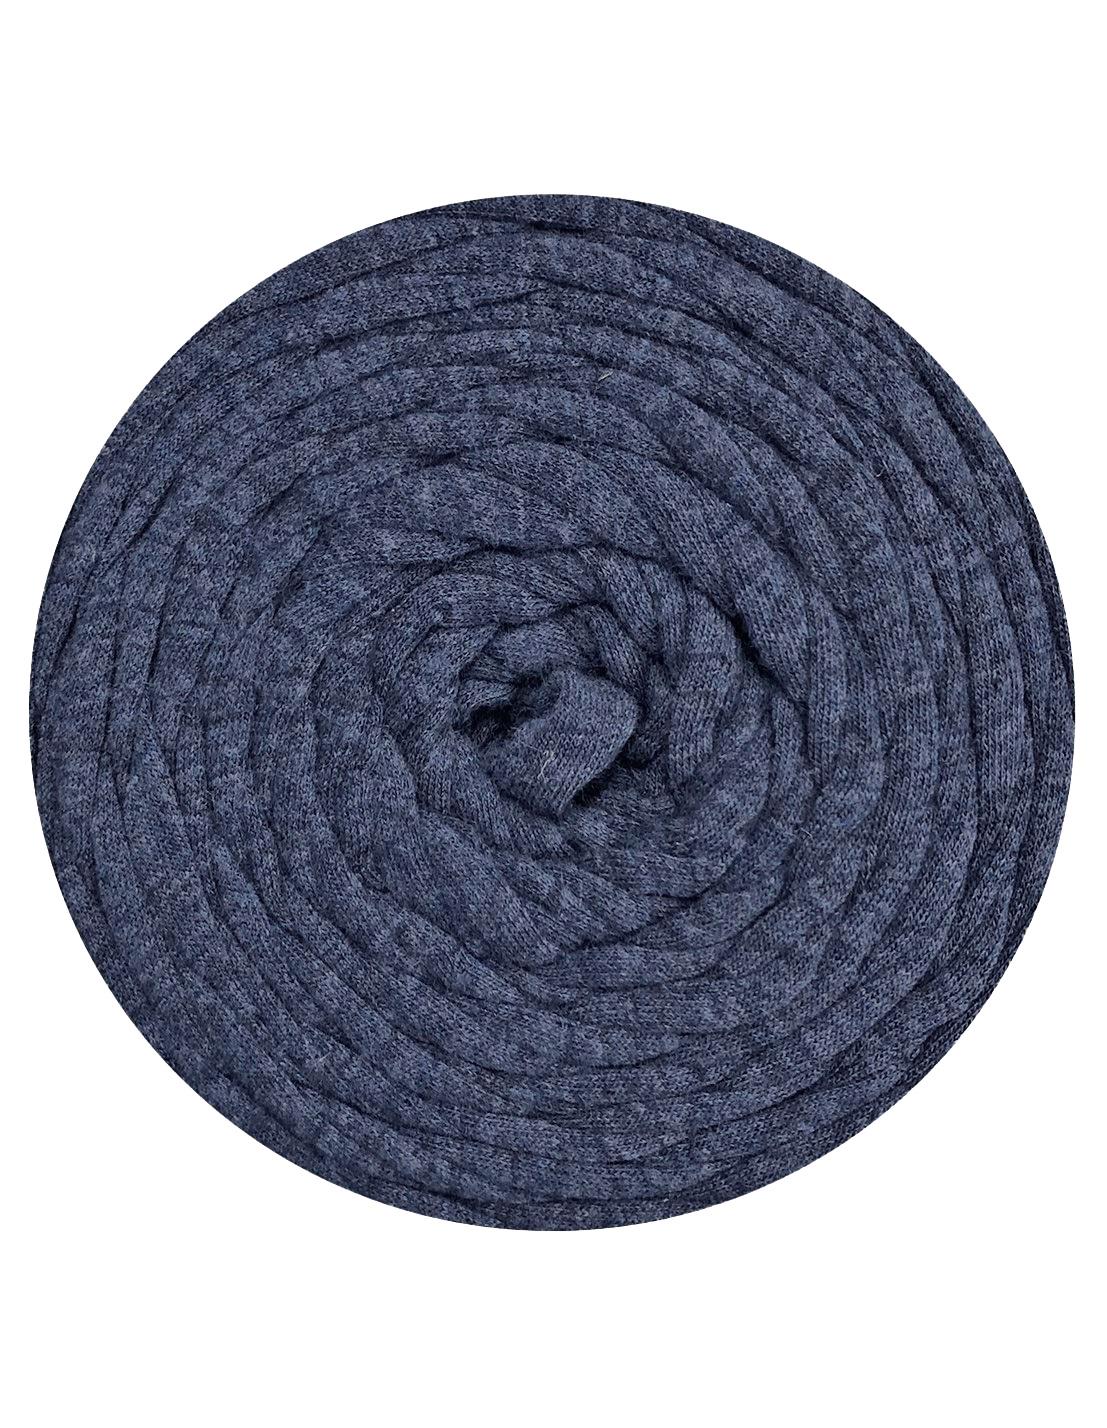 Mottled denim blue t-shirt yarn by Hoooked Zpagetti (100-120m)